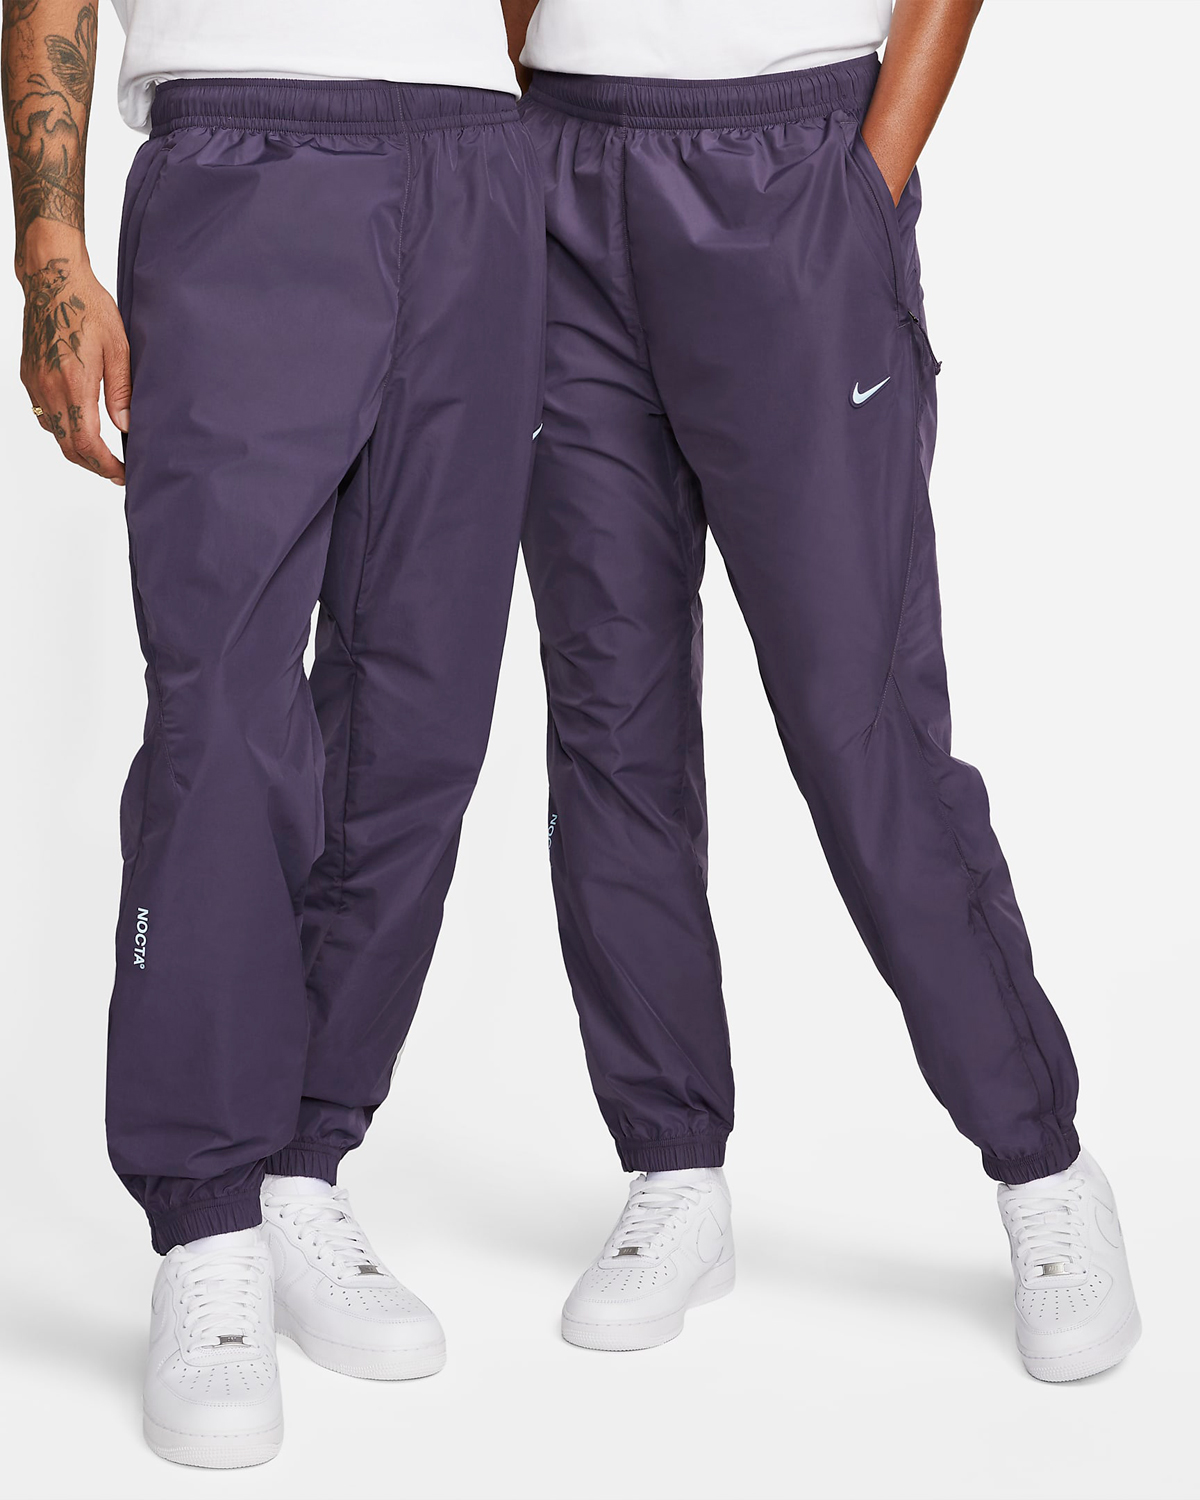 Drake-NOCTA-Nike-Track-Pants-Purple-1